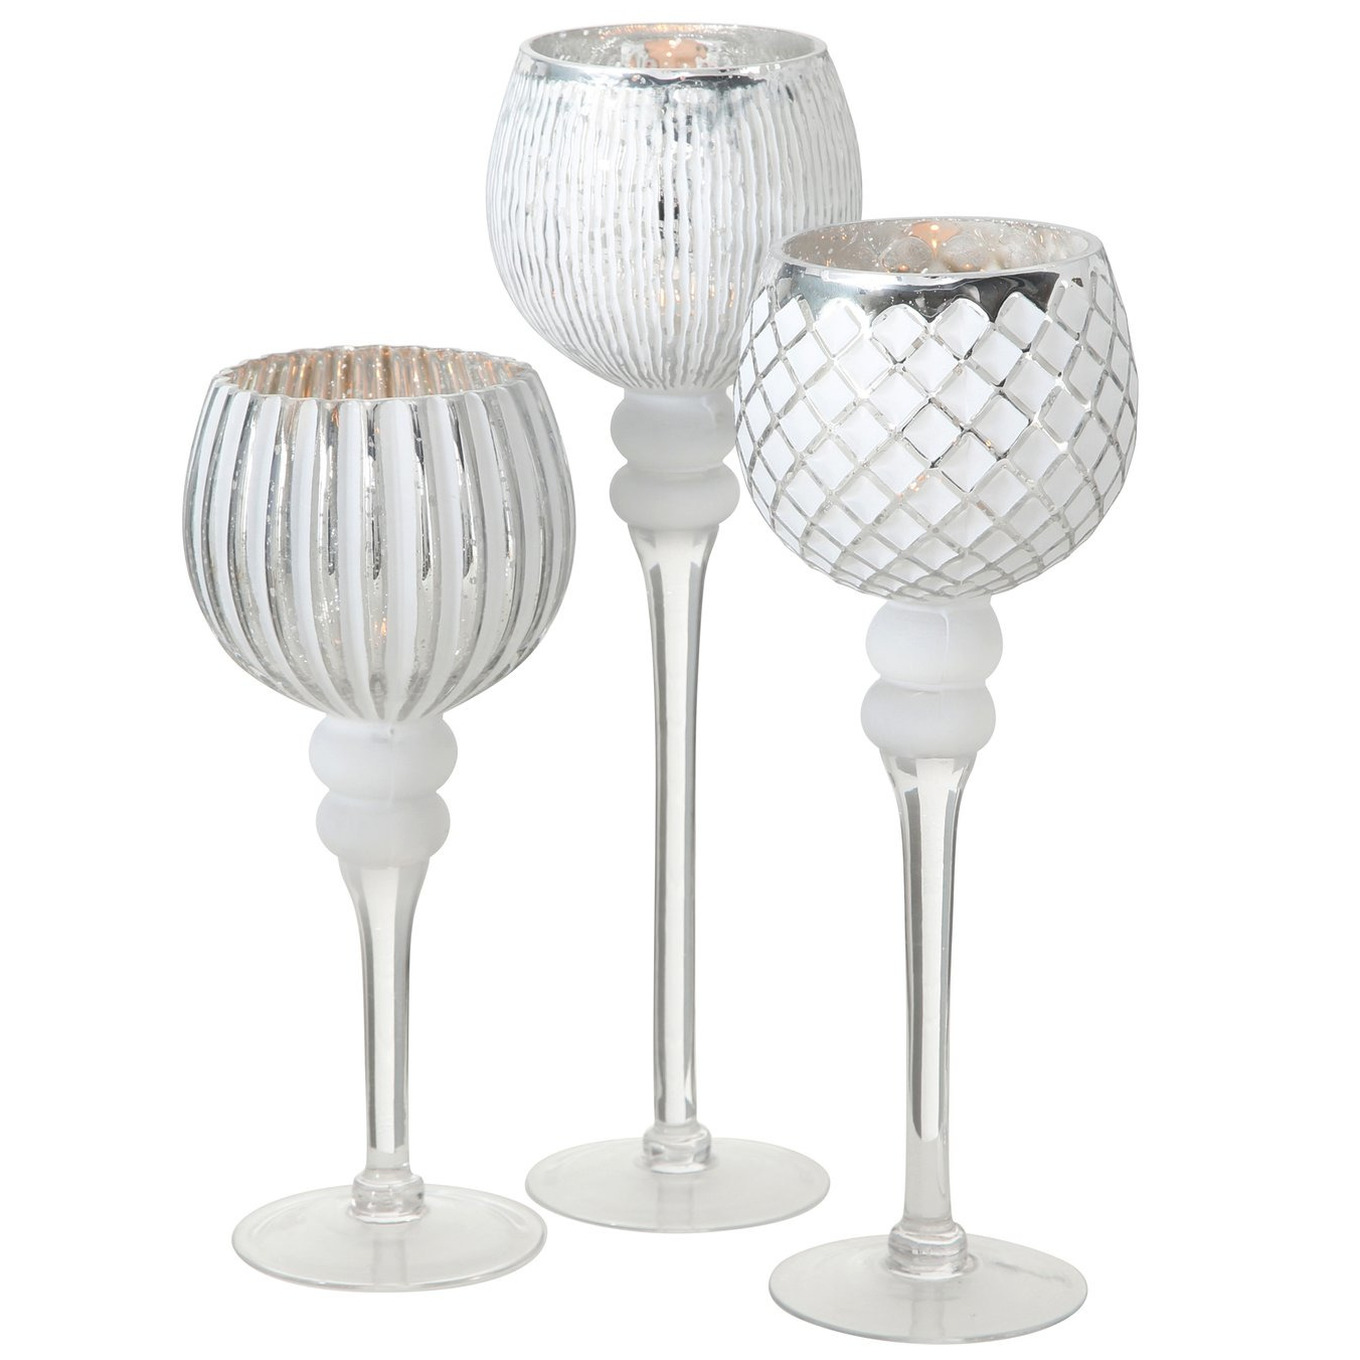 Luxe glazen design kaarsenhouders windlichten set van 3x stuks zilver wit transparant 30 40 cm